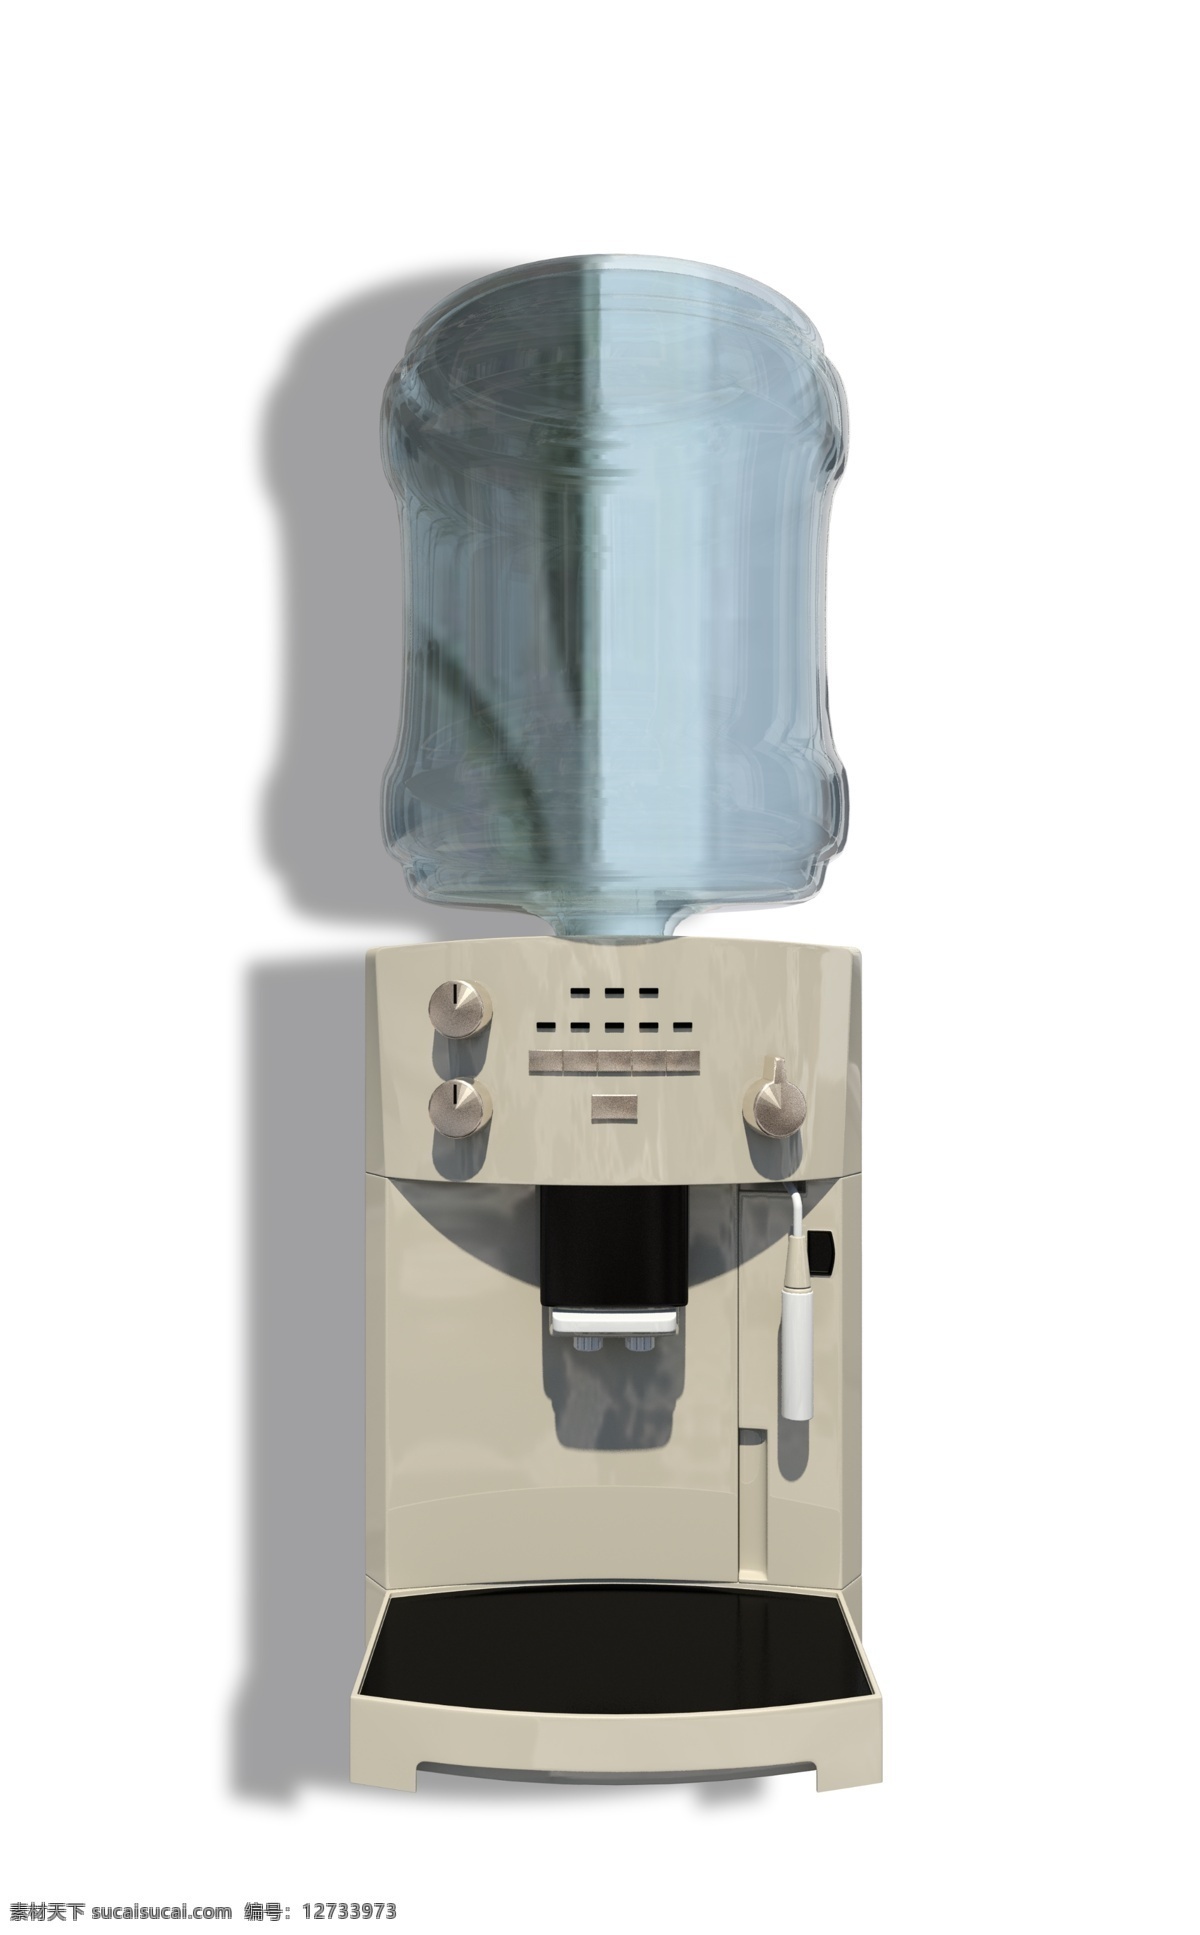 家用电器 纯净水 饮水机 冷热饮水机 冷水 热水 烧水 喝水 水资源 电器 热水电器 家用 客厅摆设